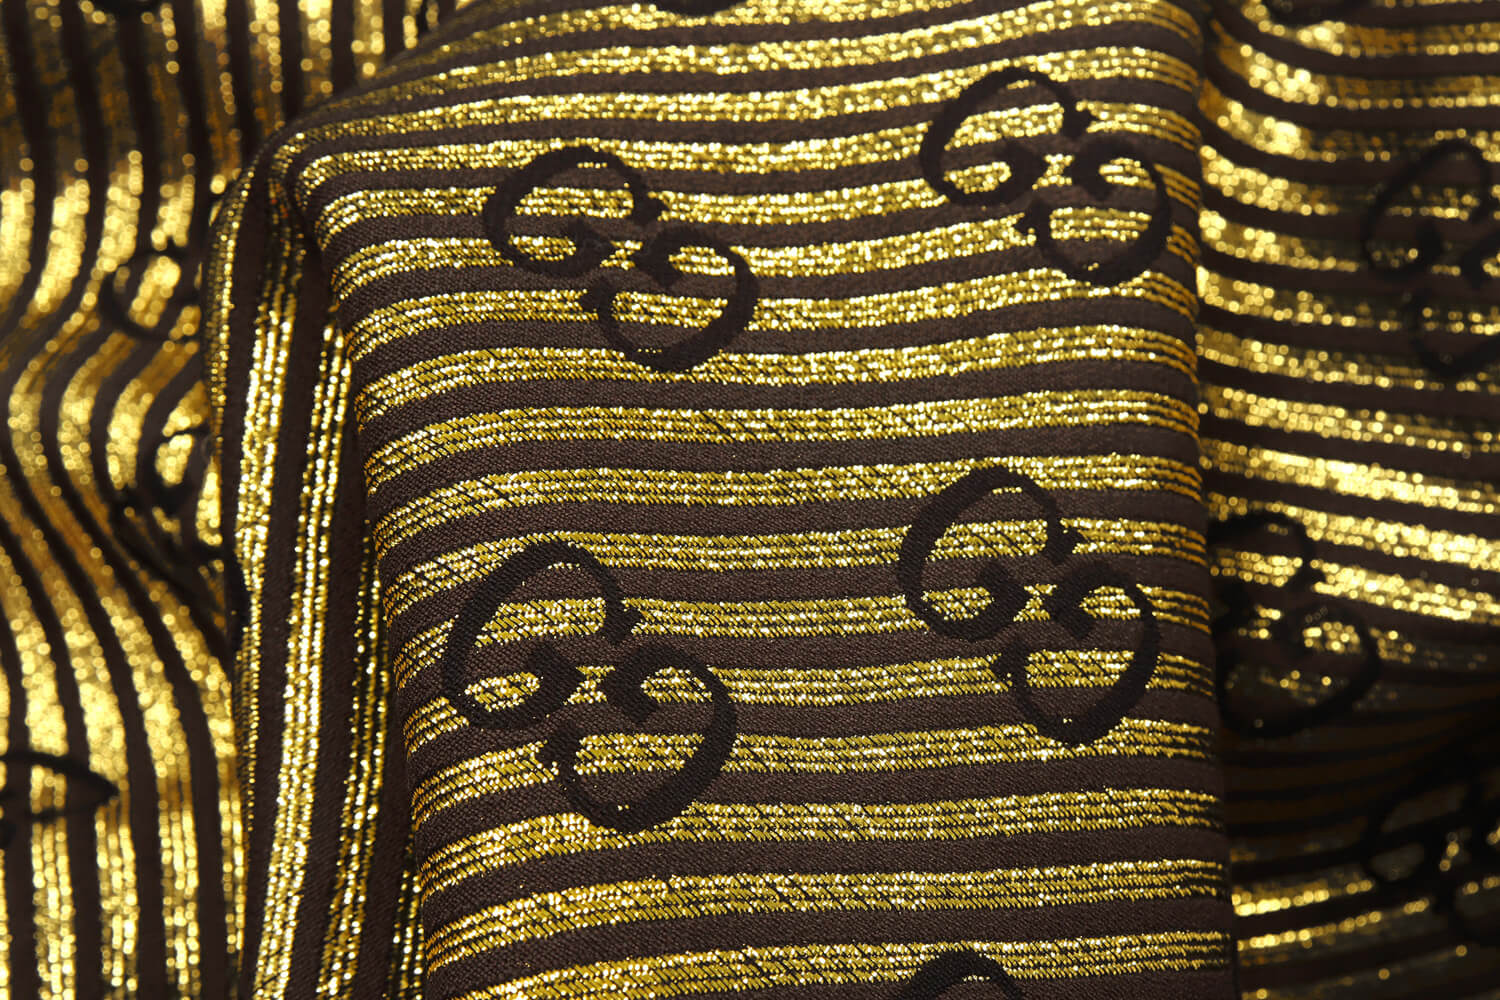 Хлопковый жаккард Gucci, цвет Золото, фото 1